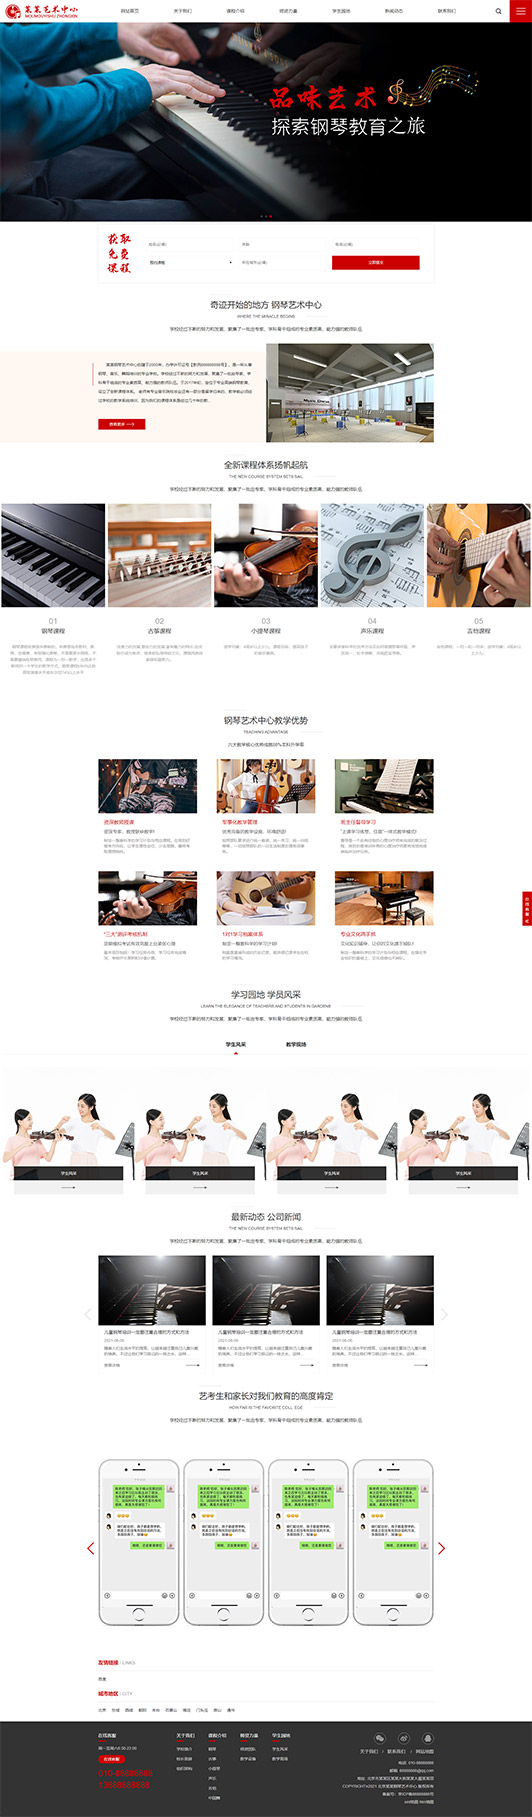 葫芦岛钢琴艺术培训公司响应式企业网站